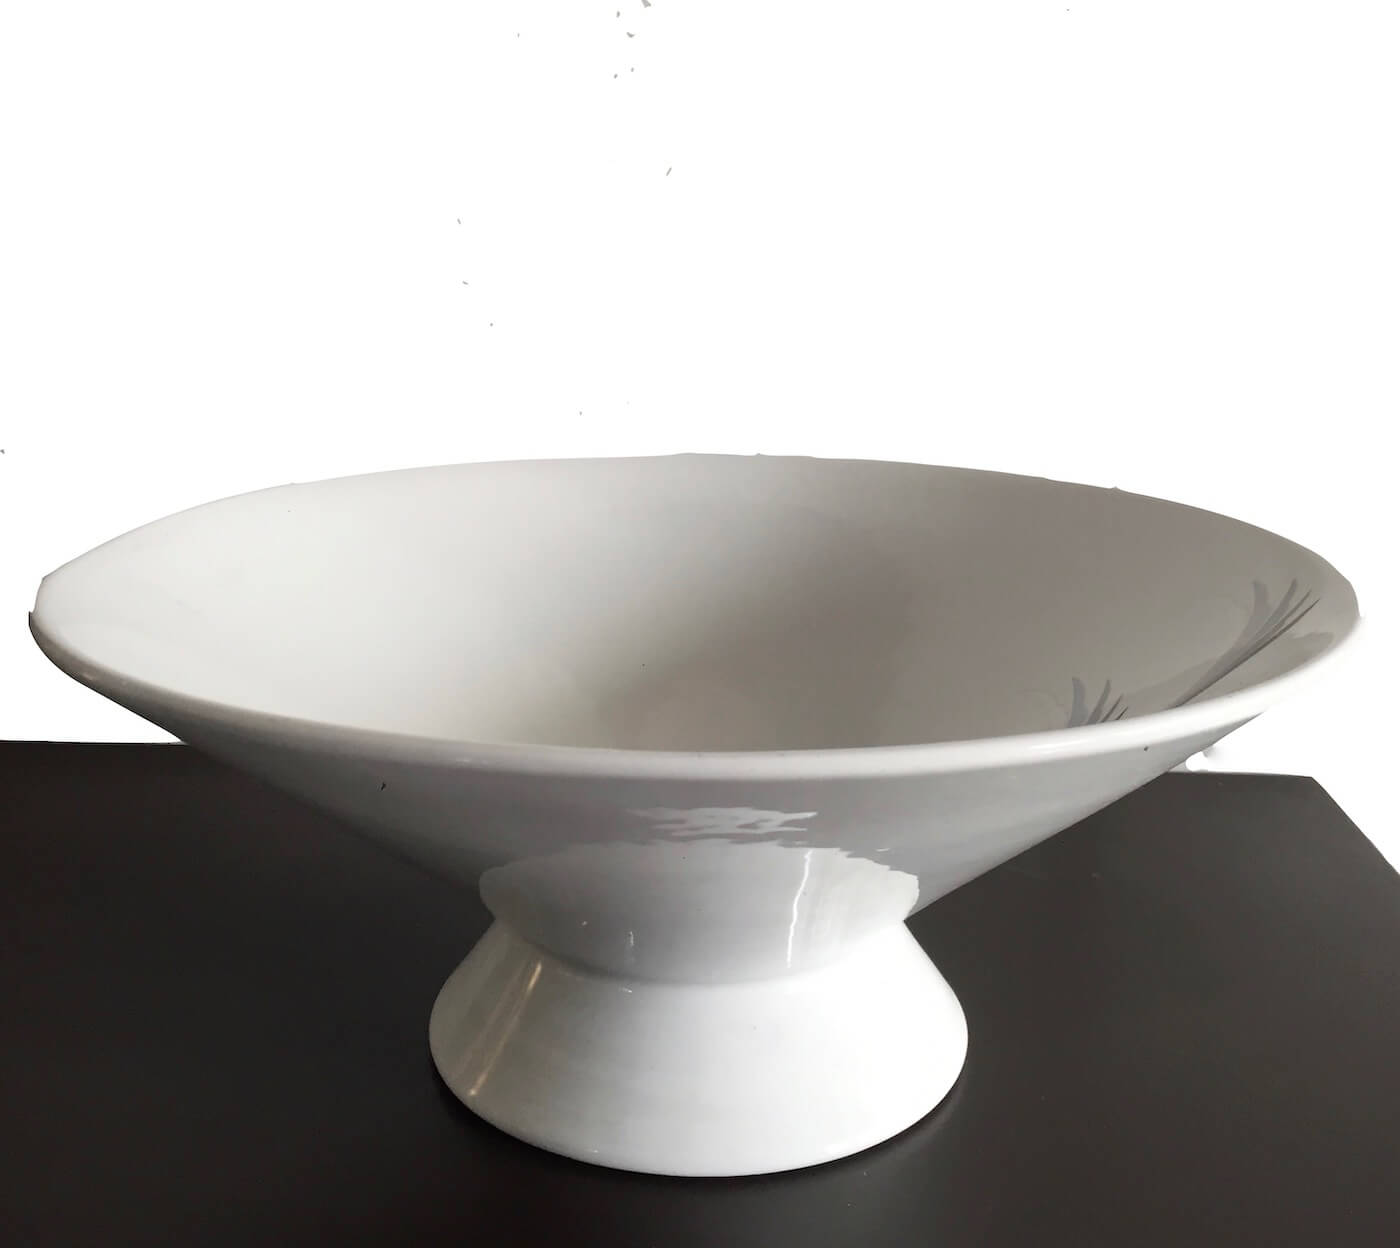 Nome: CENTROTAVOLA IN CERAMICA colore bianco di Rometti ceramiche Misure: DIAM. 34 cm, H 14 cm